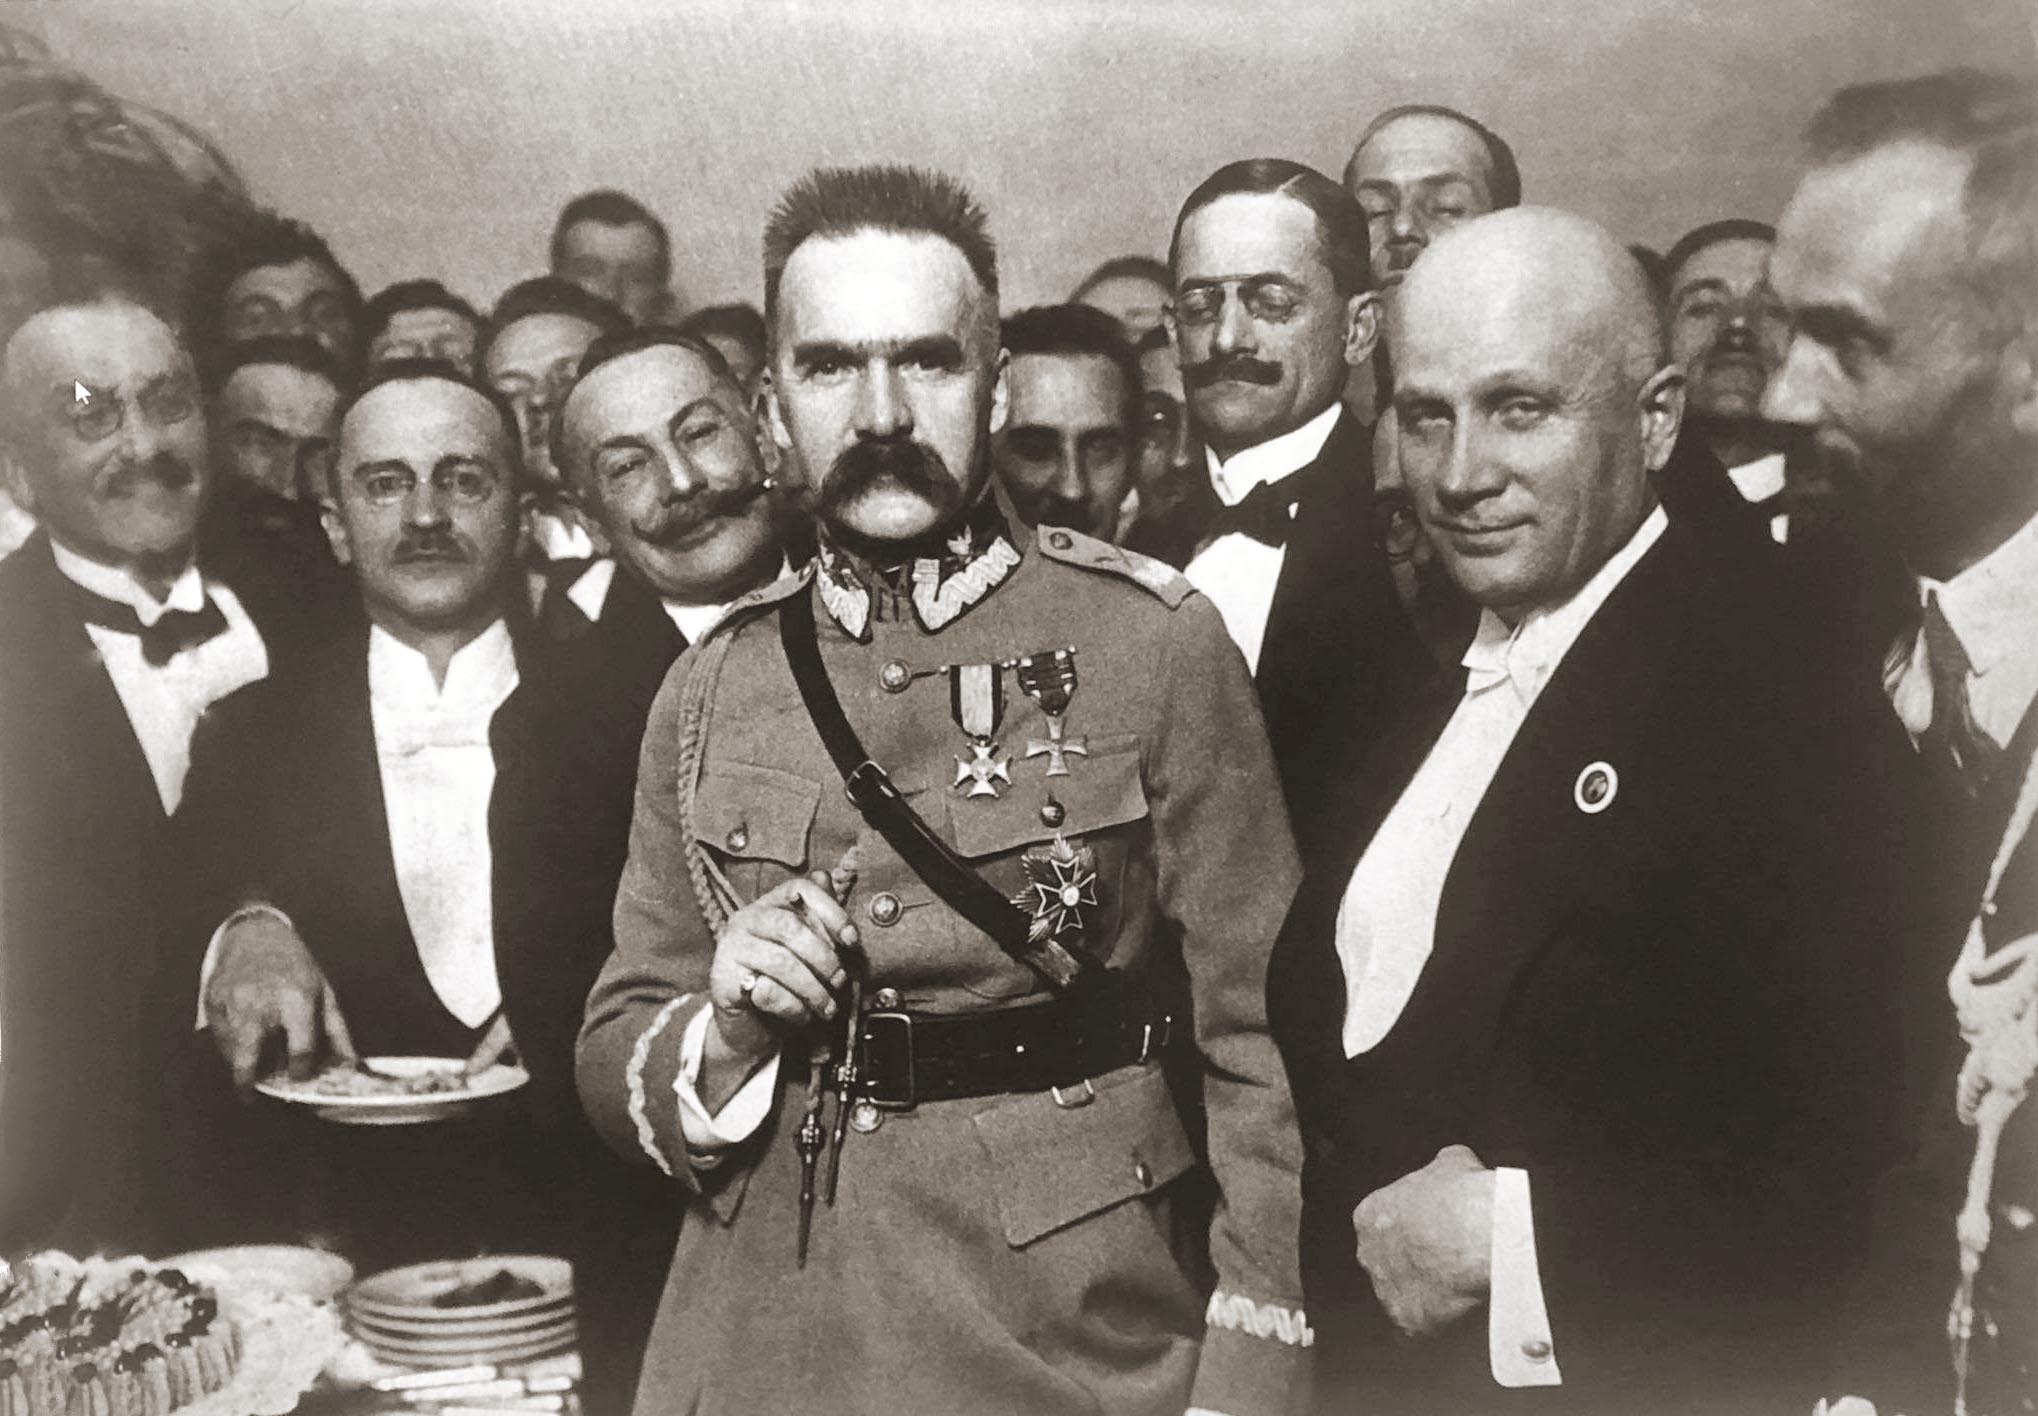 Józef Piłsudski in Warsaw, Poland, 1923.